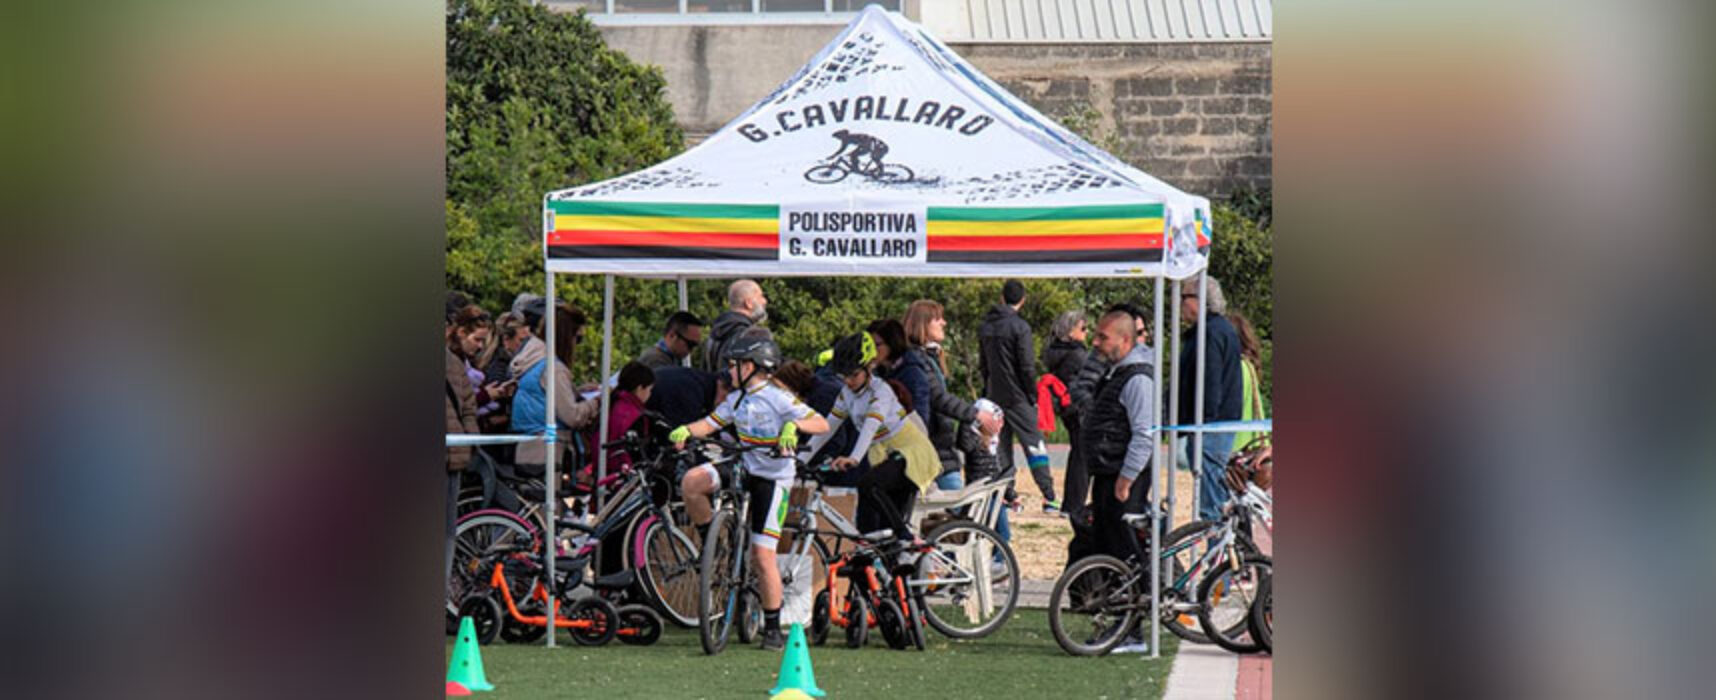 Scuola di Ciclismo Cavallaro, tutto pronto per l’evento “Bici in festa”  